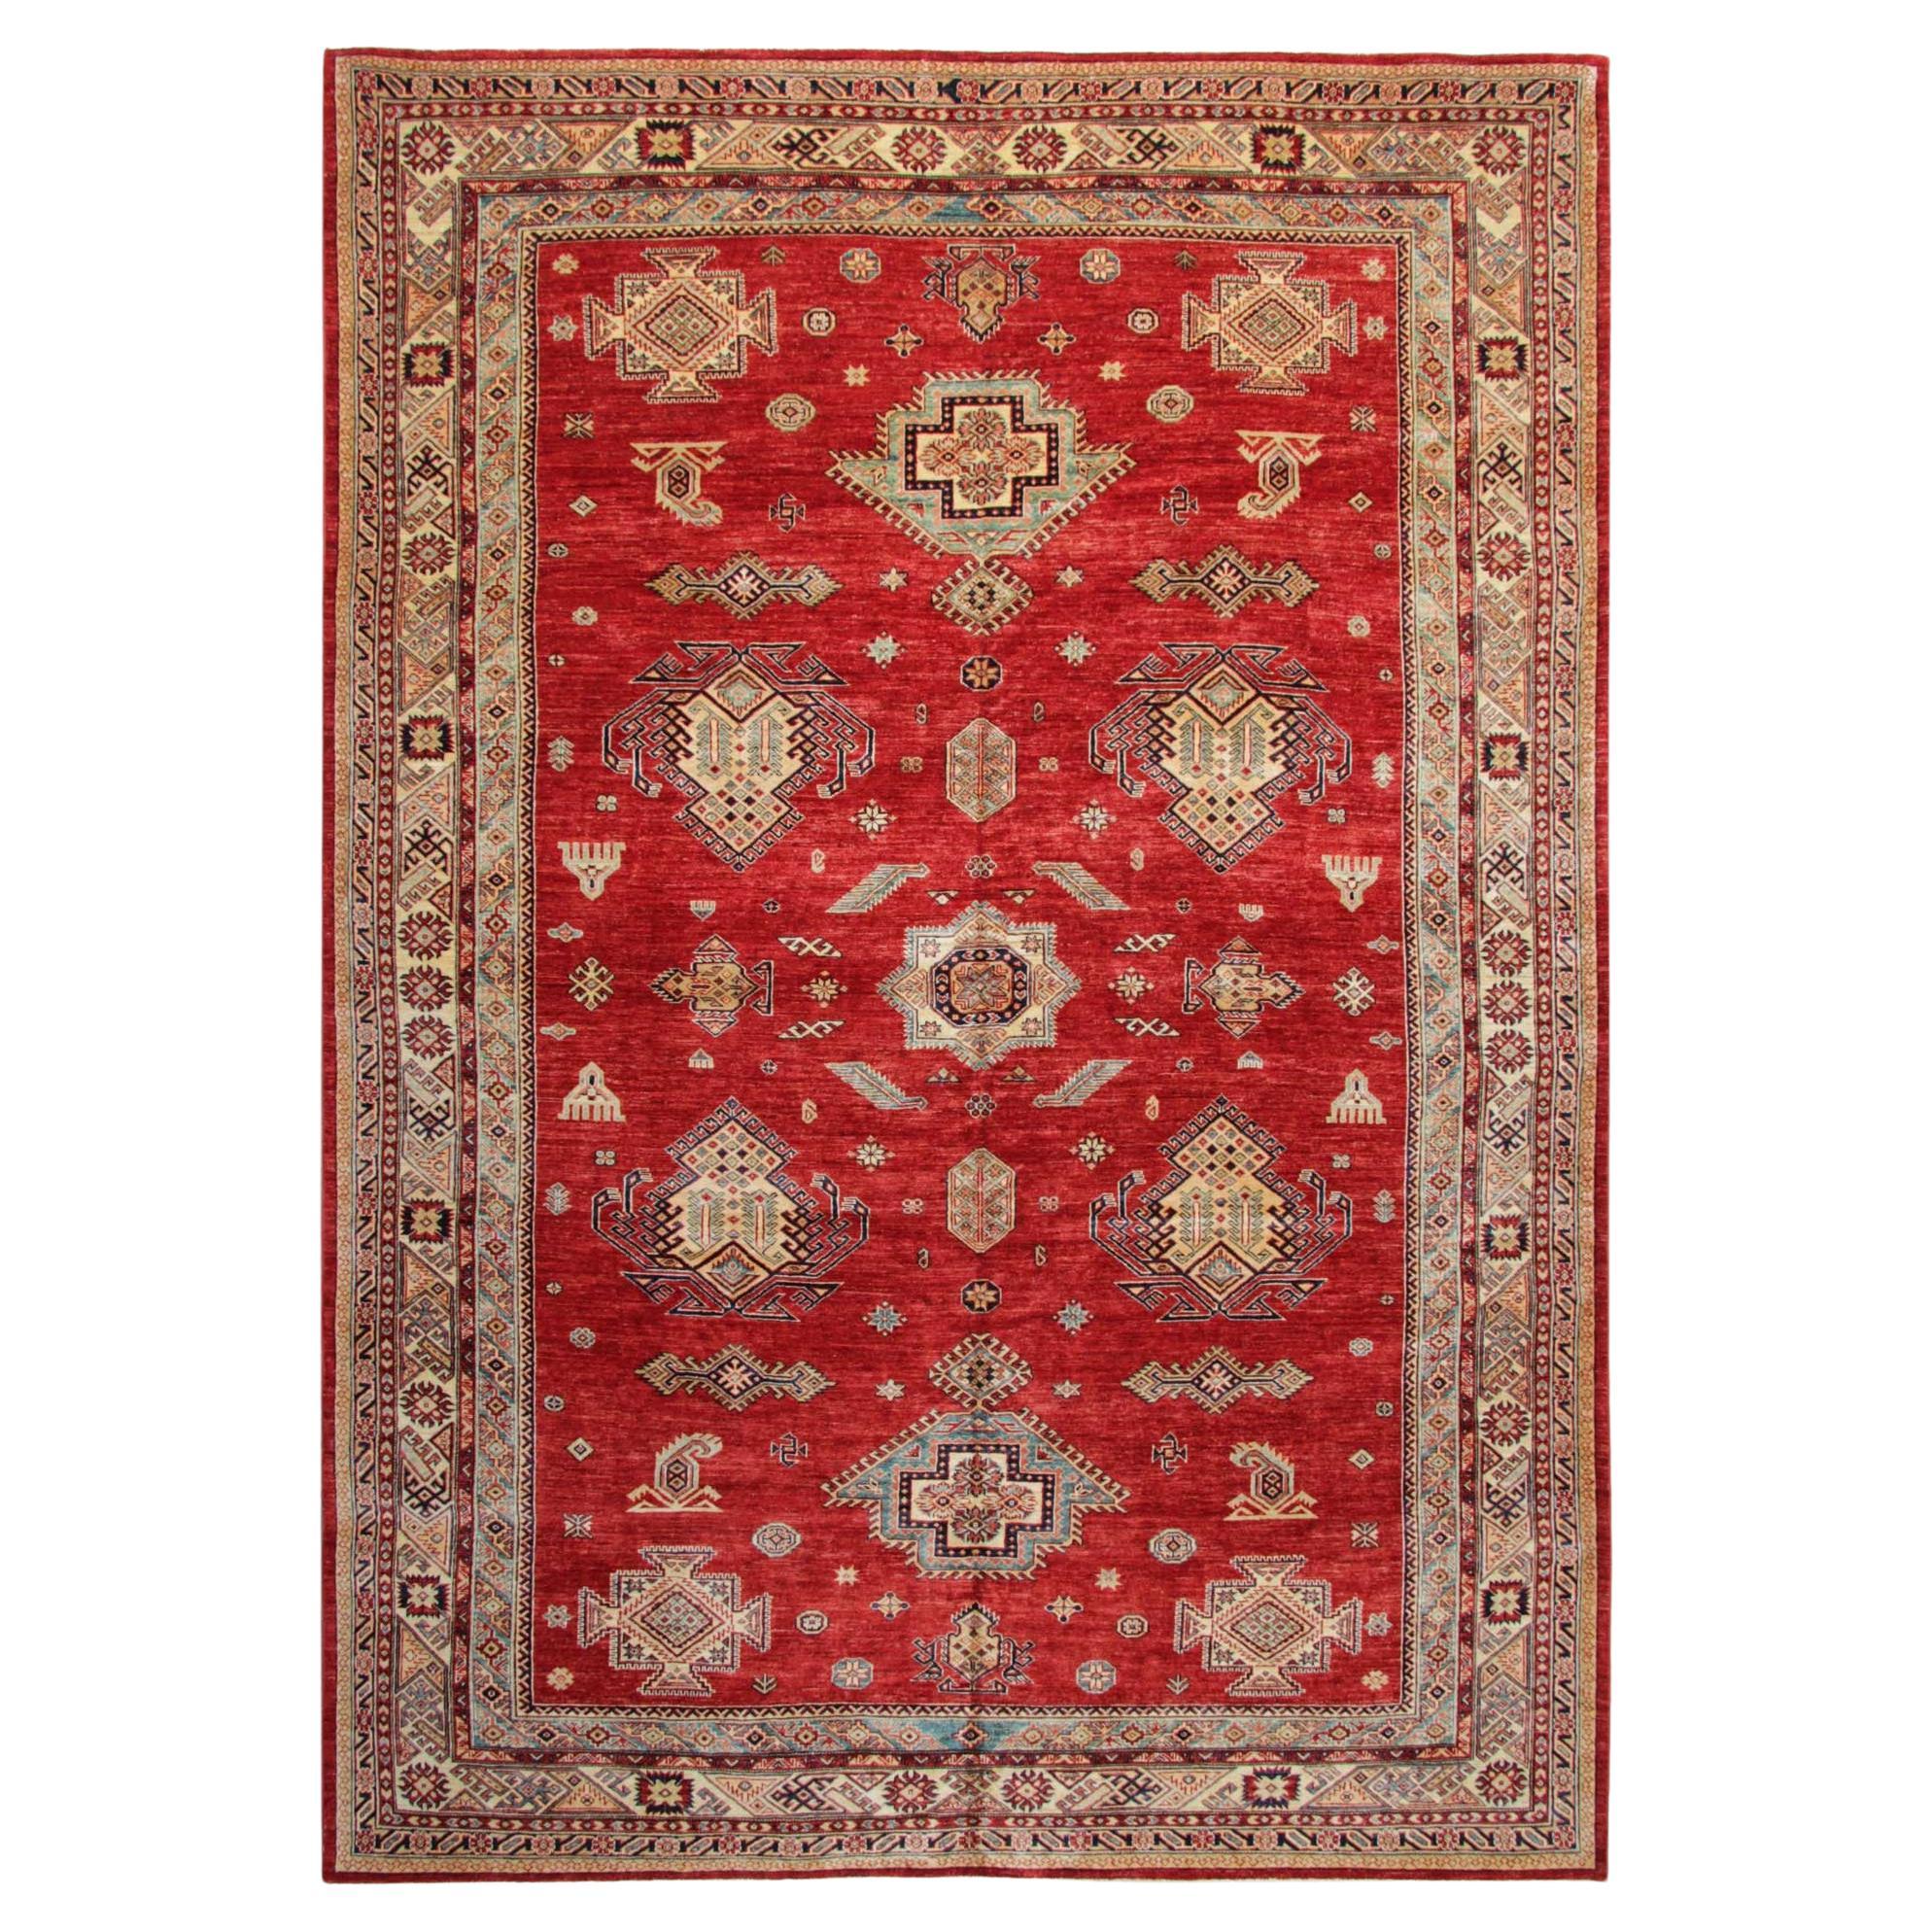 Tapis orientaux, grands tapis rouges faits main, vente de tapis traditionnels